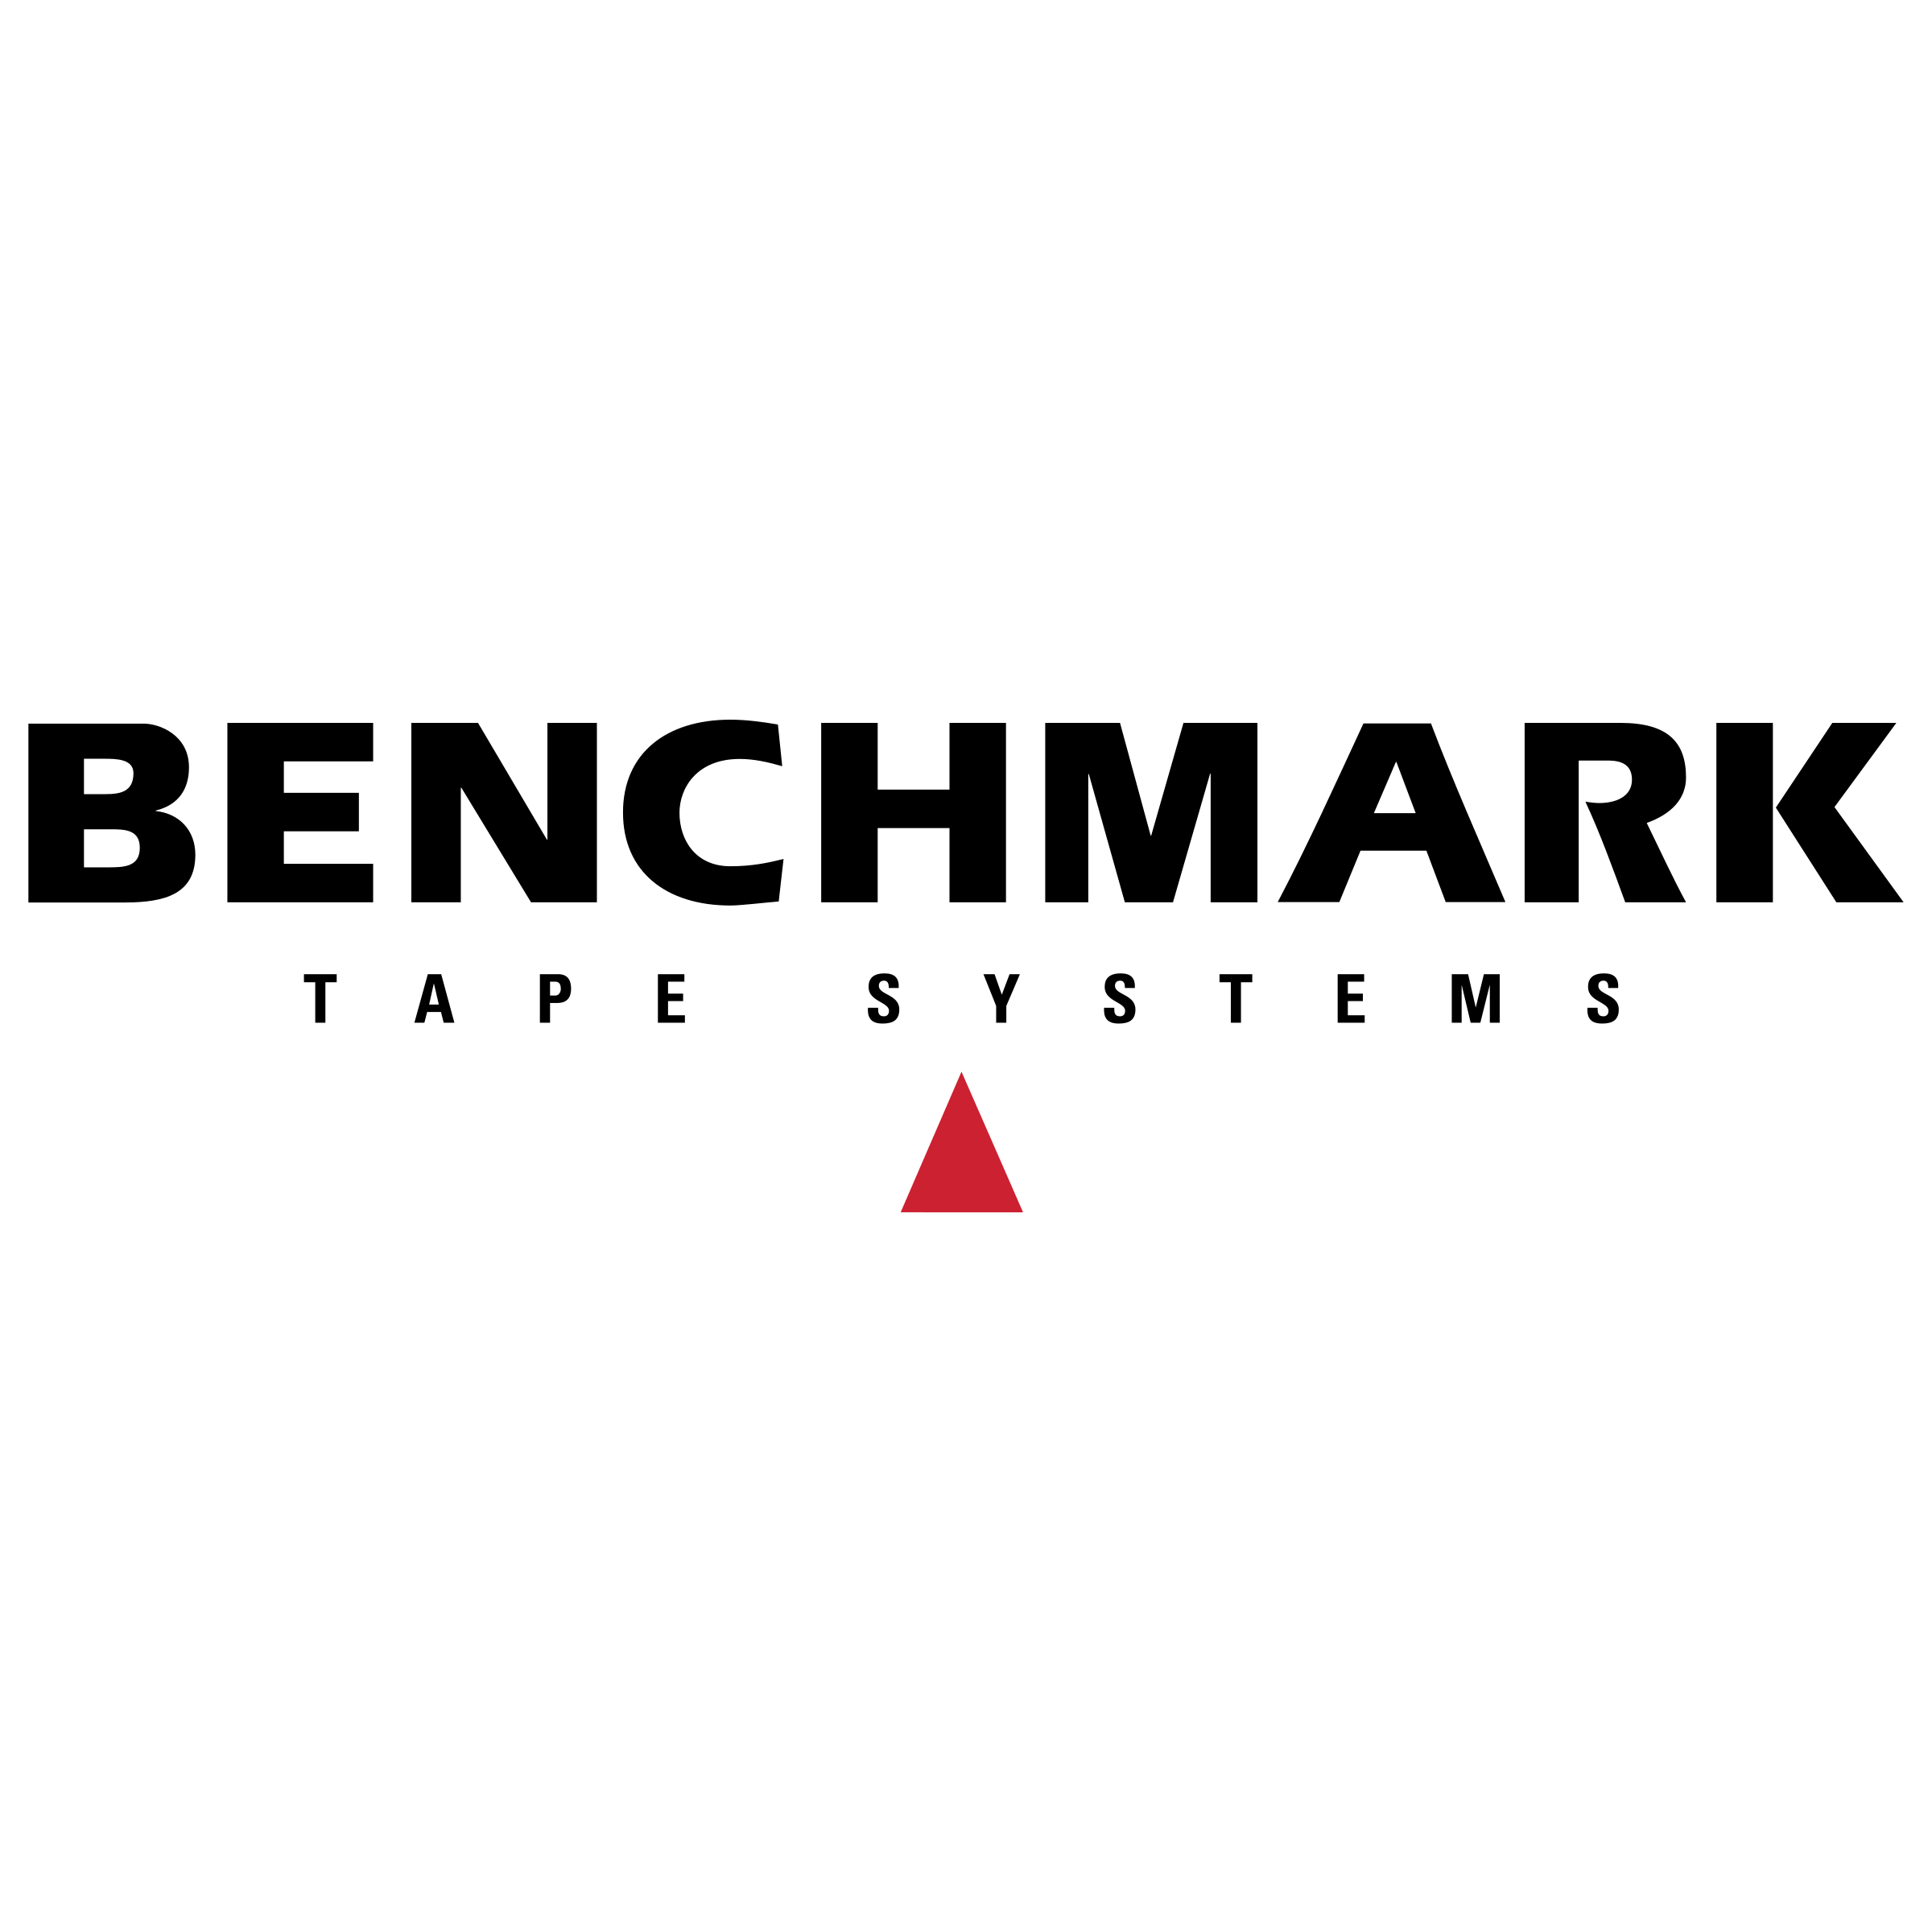 Benchmark Logo - Benchmark 01 Logo PNG Transparent & SVG Vector